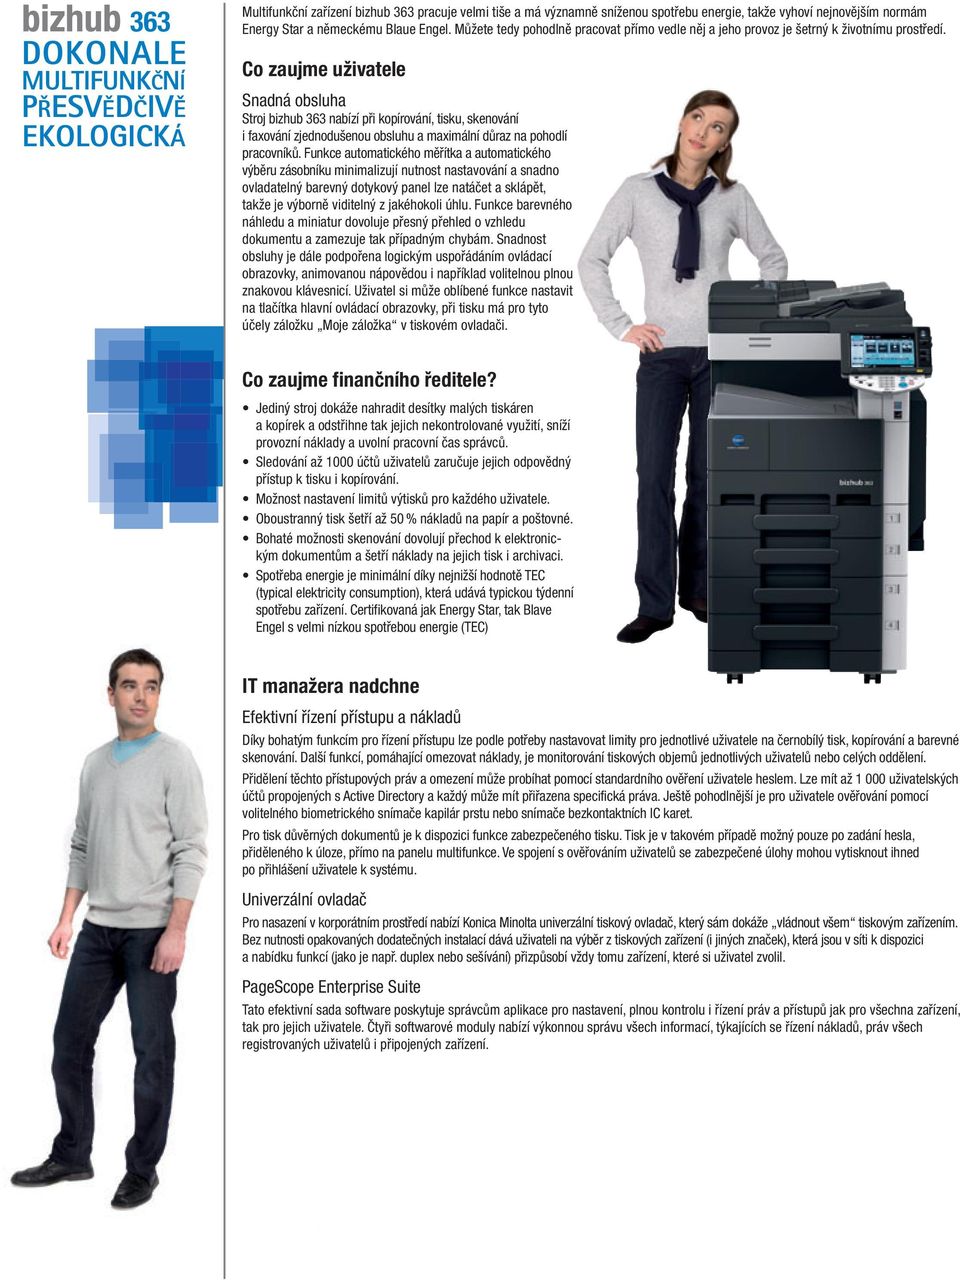 Co zaujme uživatele Snadná obsluha Stroj bizhub 363 nabízí při kopírování, tisku, skenování i faxování zjednodušenou obsluhu a maximální důraz na pohodlí pracovníků.